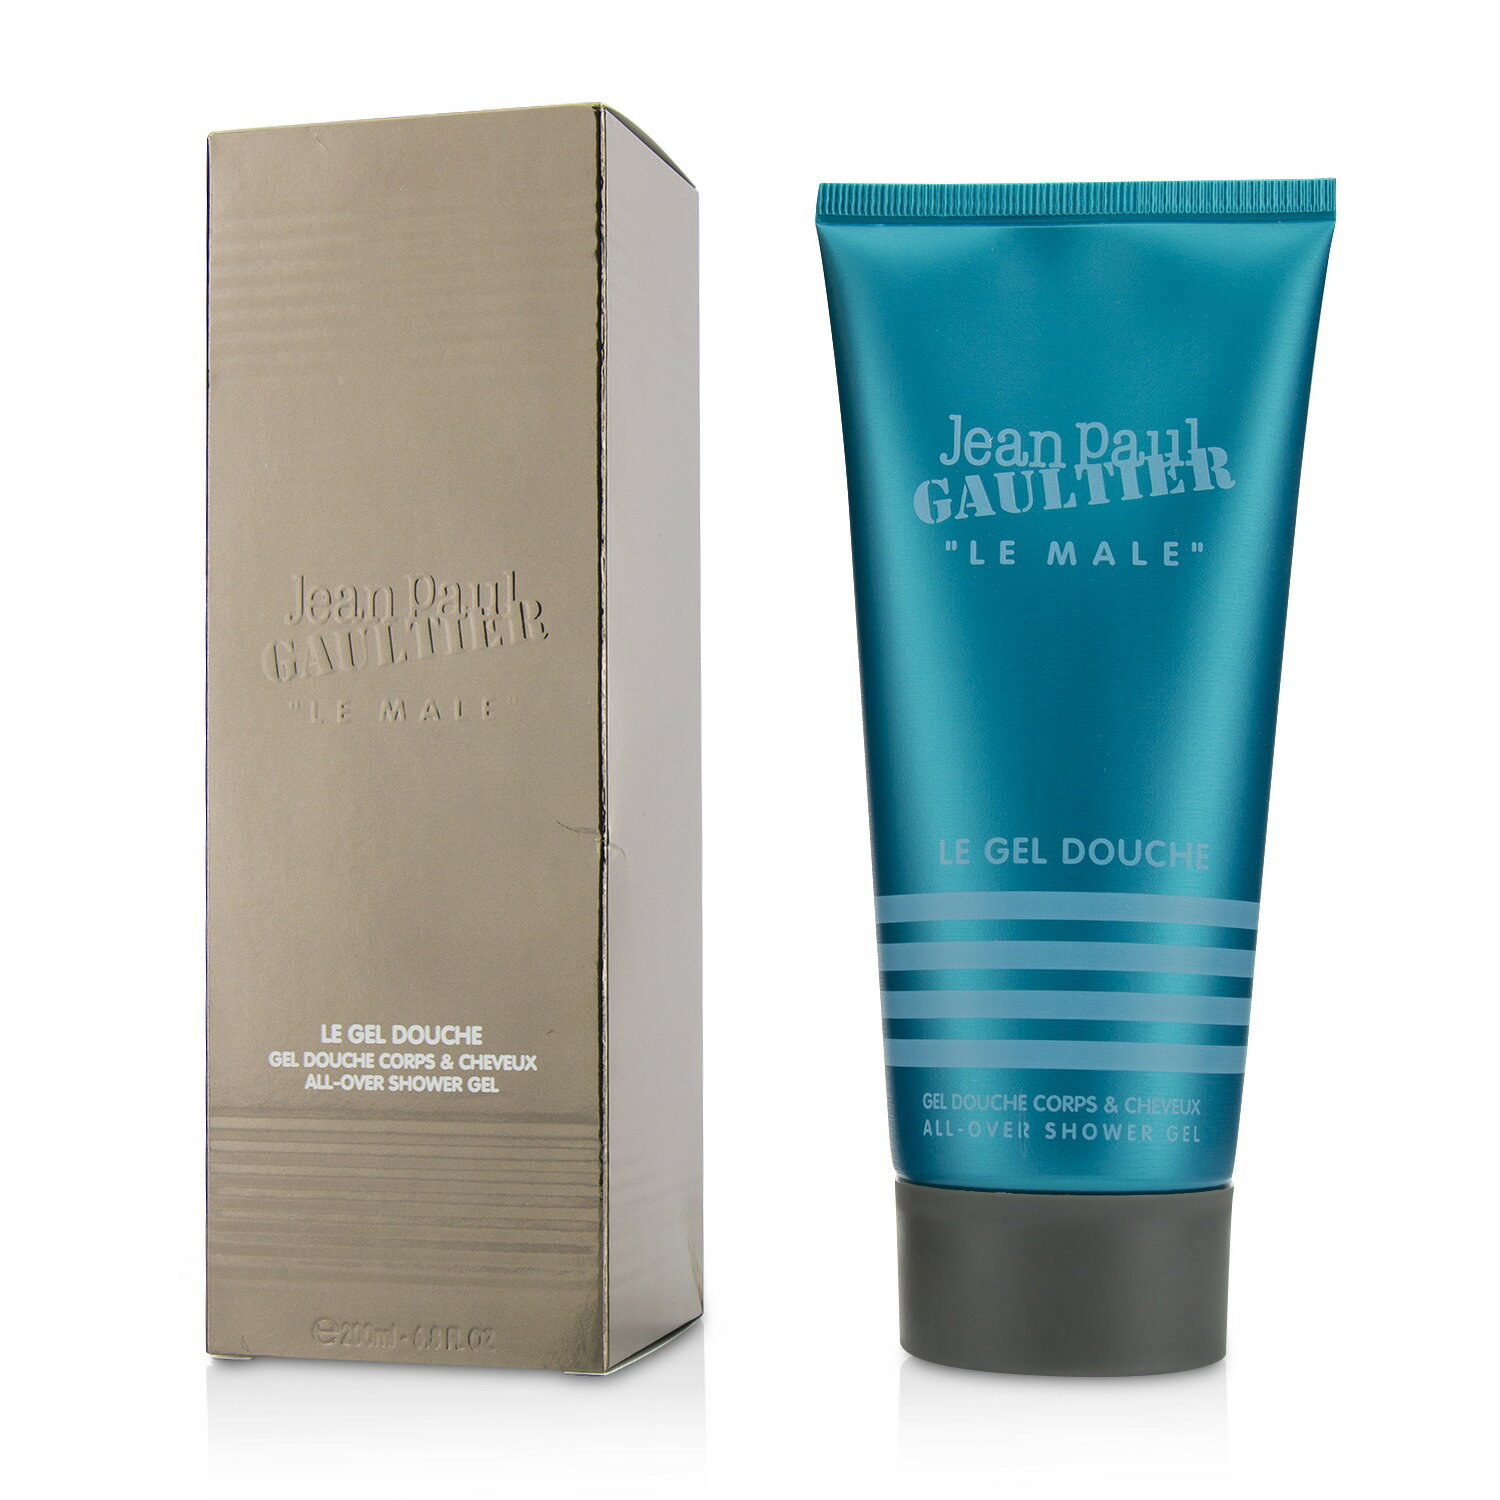 高堤耶 Jean Paul Gaultier - 裸男沐浴洗髮精 Le Male All-Over Shower Gel